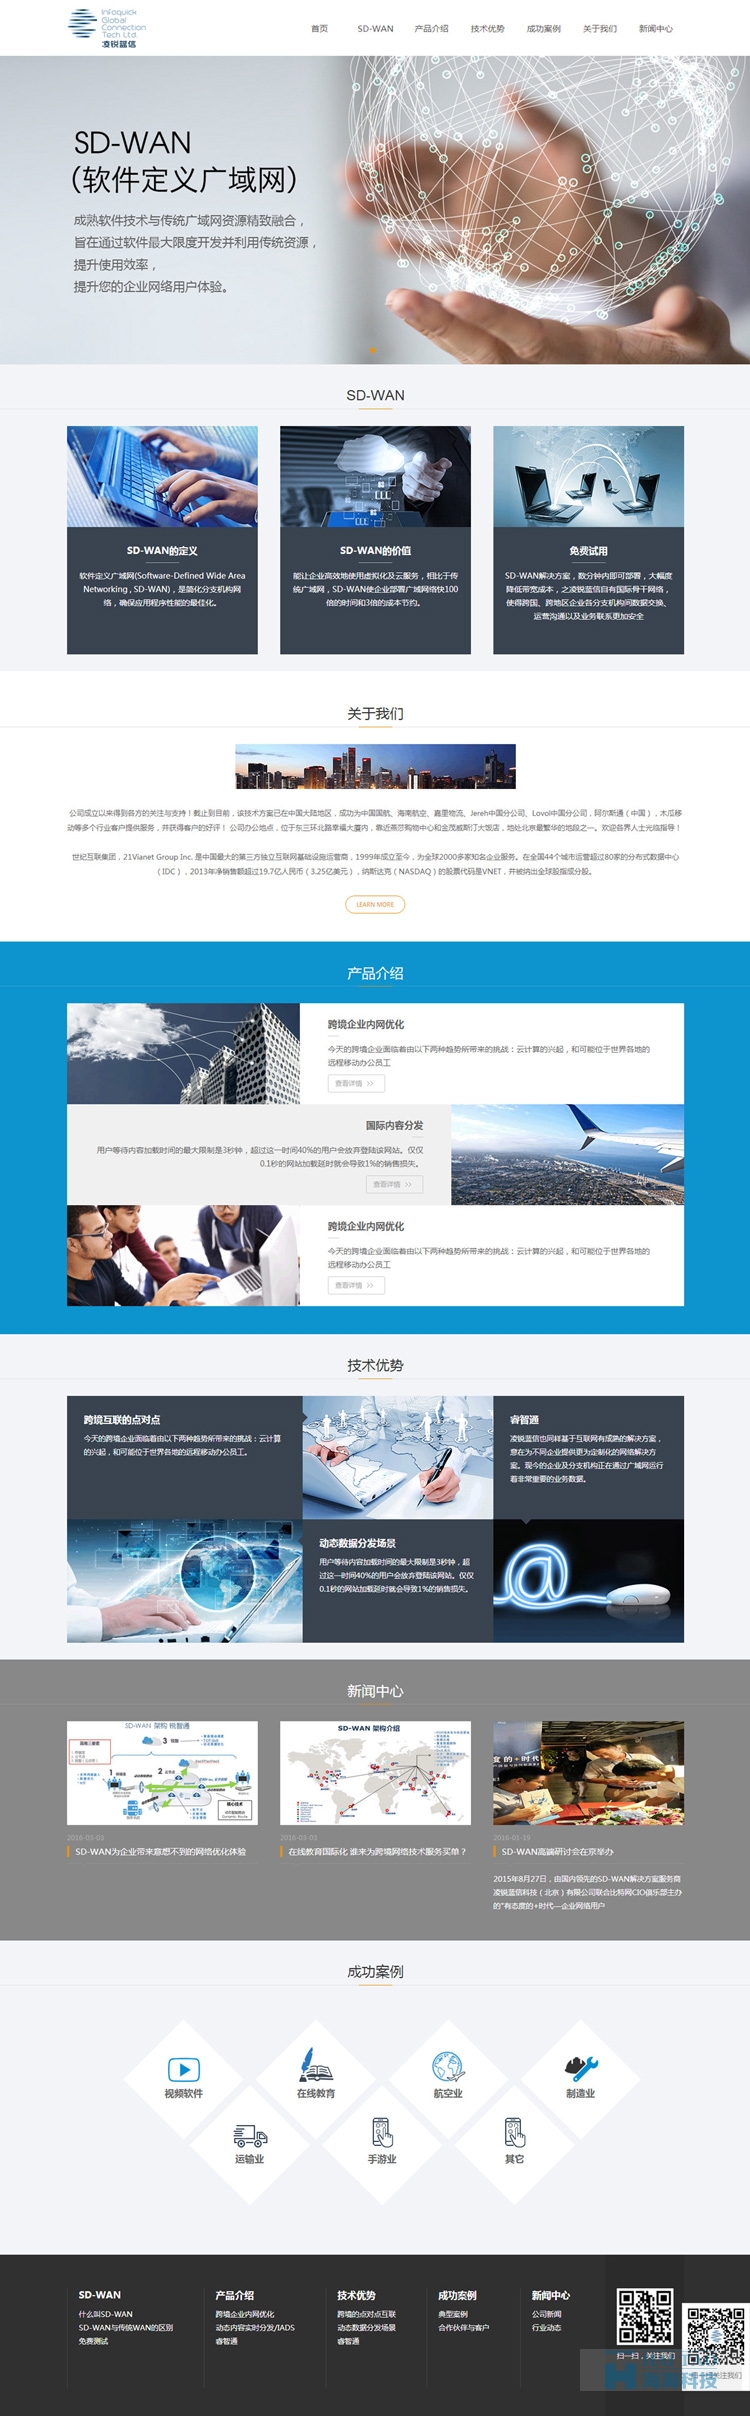 凌锐蓝信网站设计,上海响应式网站设计,上海网页响应式设计